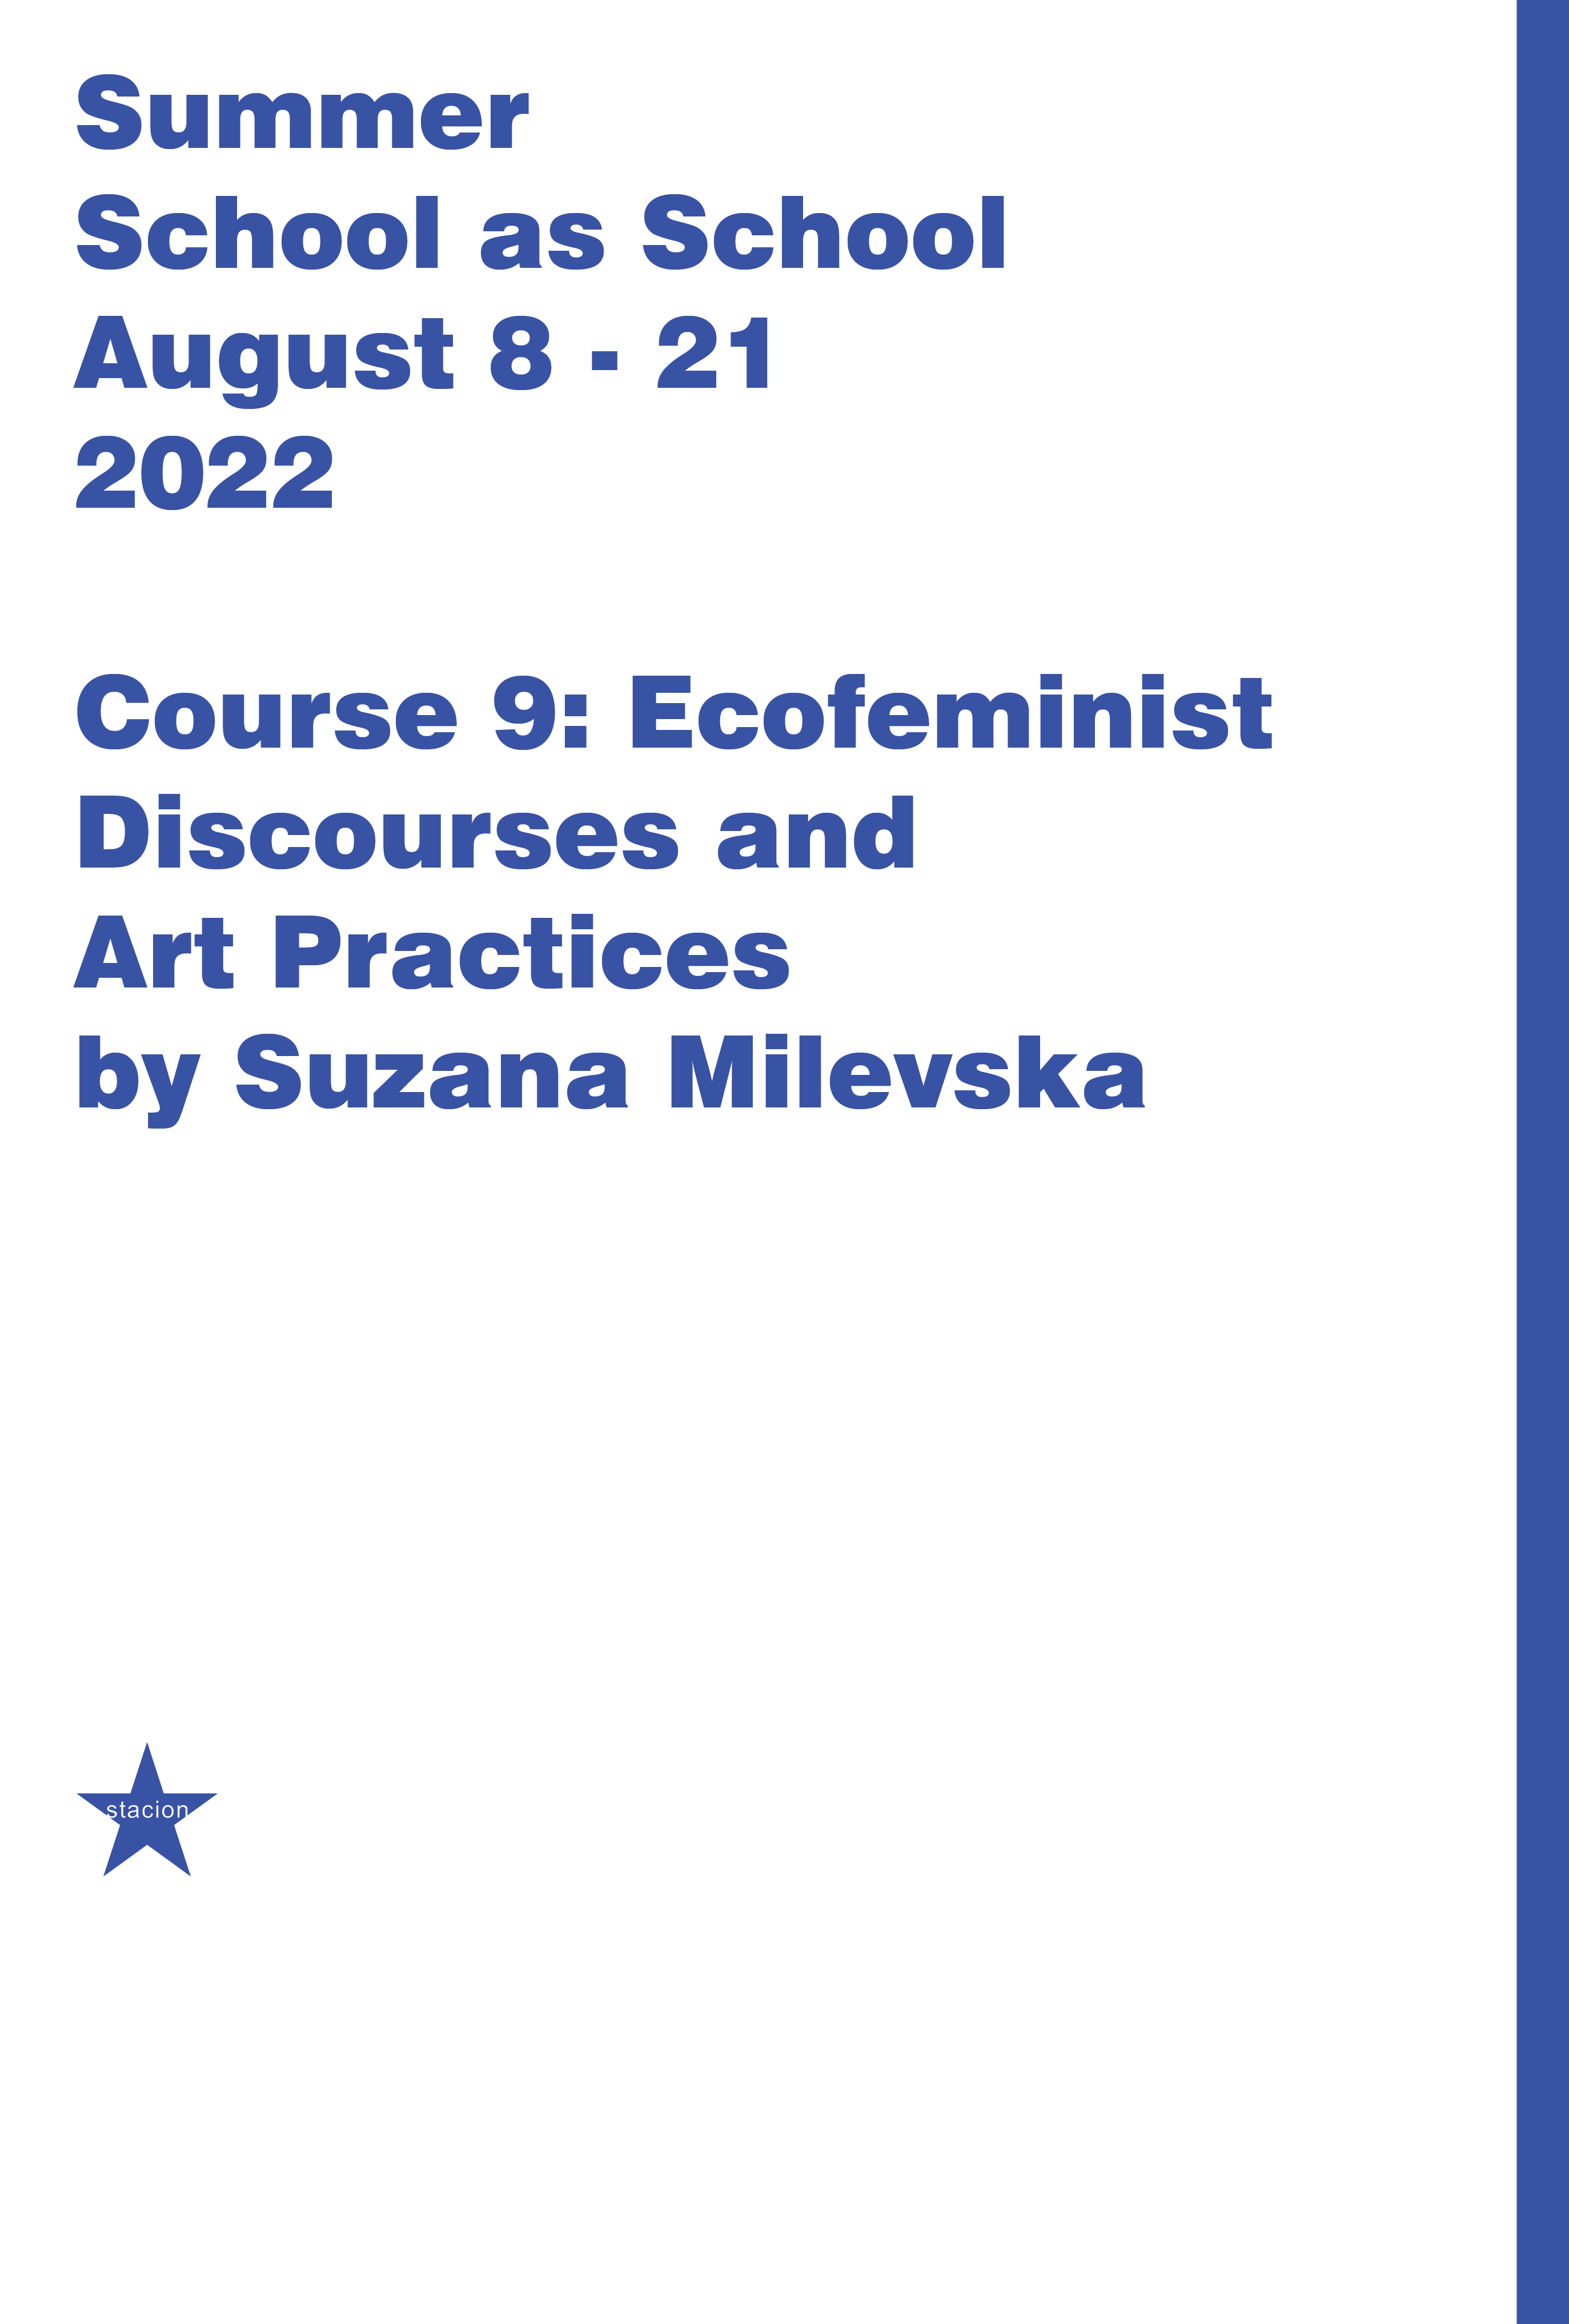 Kursi 9: Diskurset ekofeministe dhe praktikat e artit